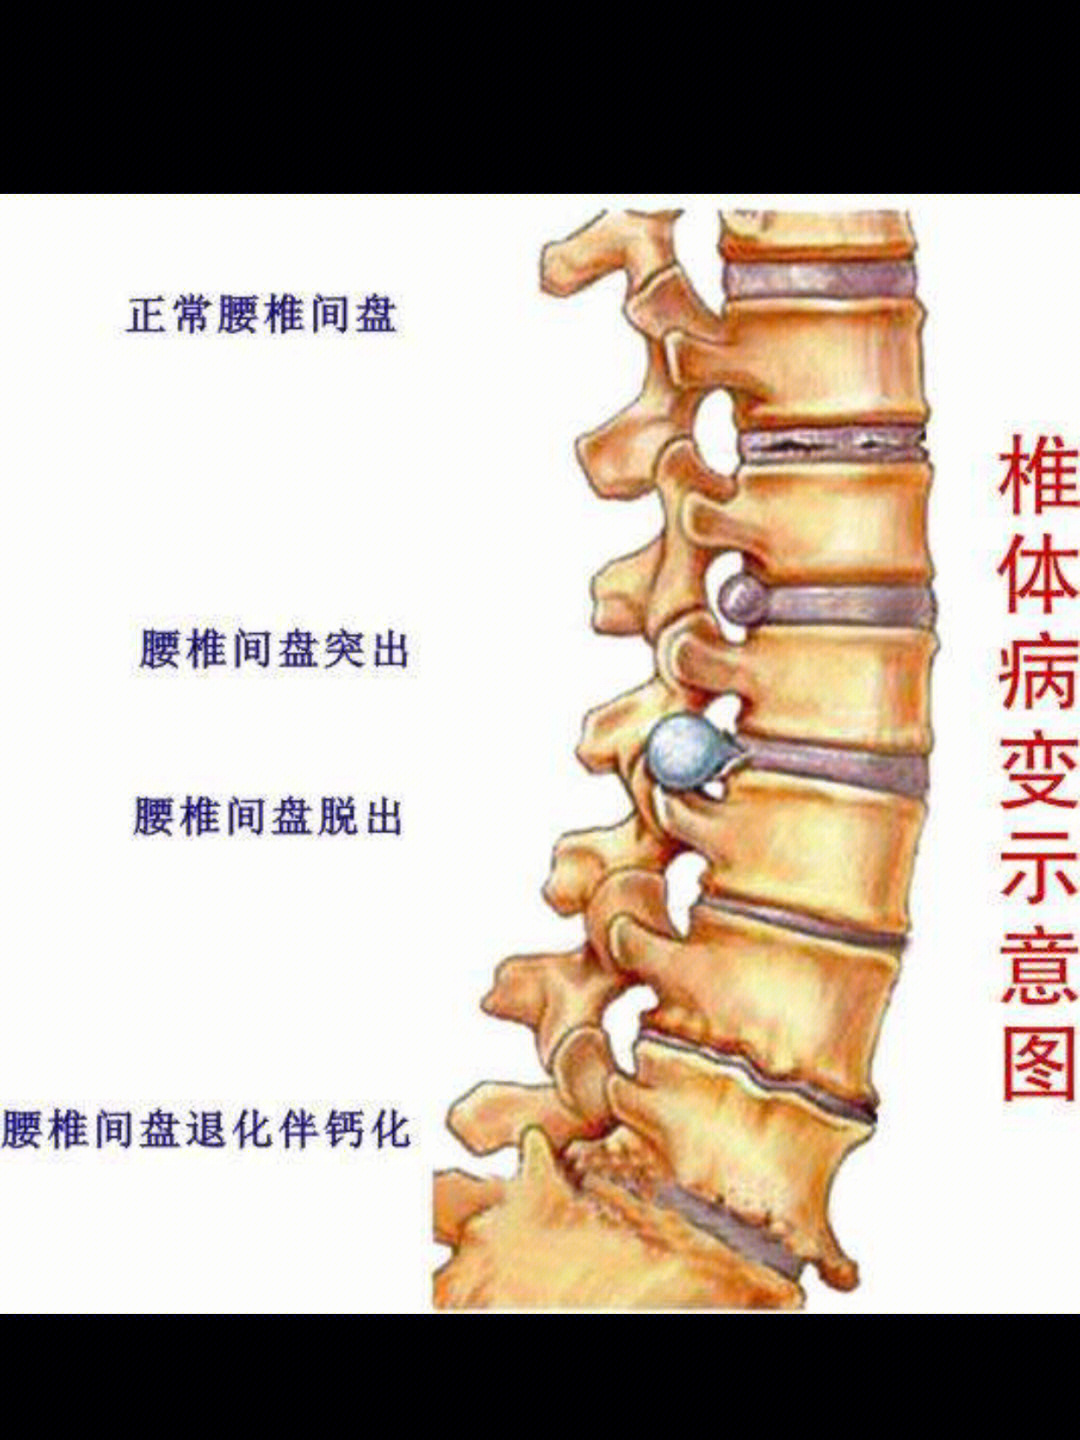 腰椎隐窝位置示意图图片